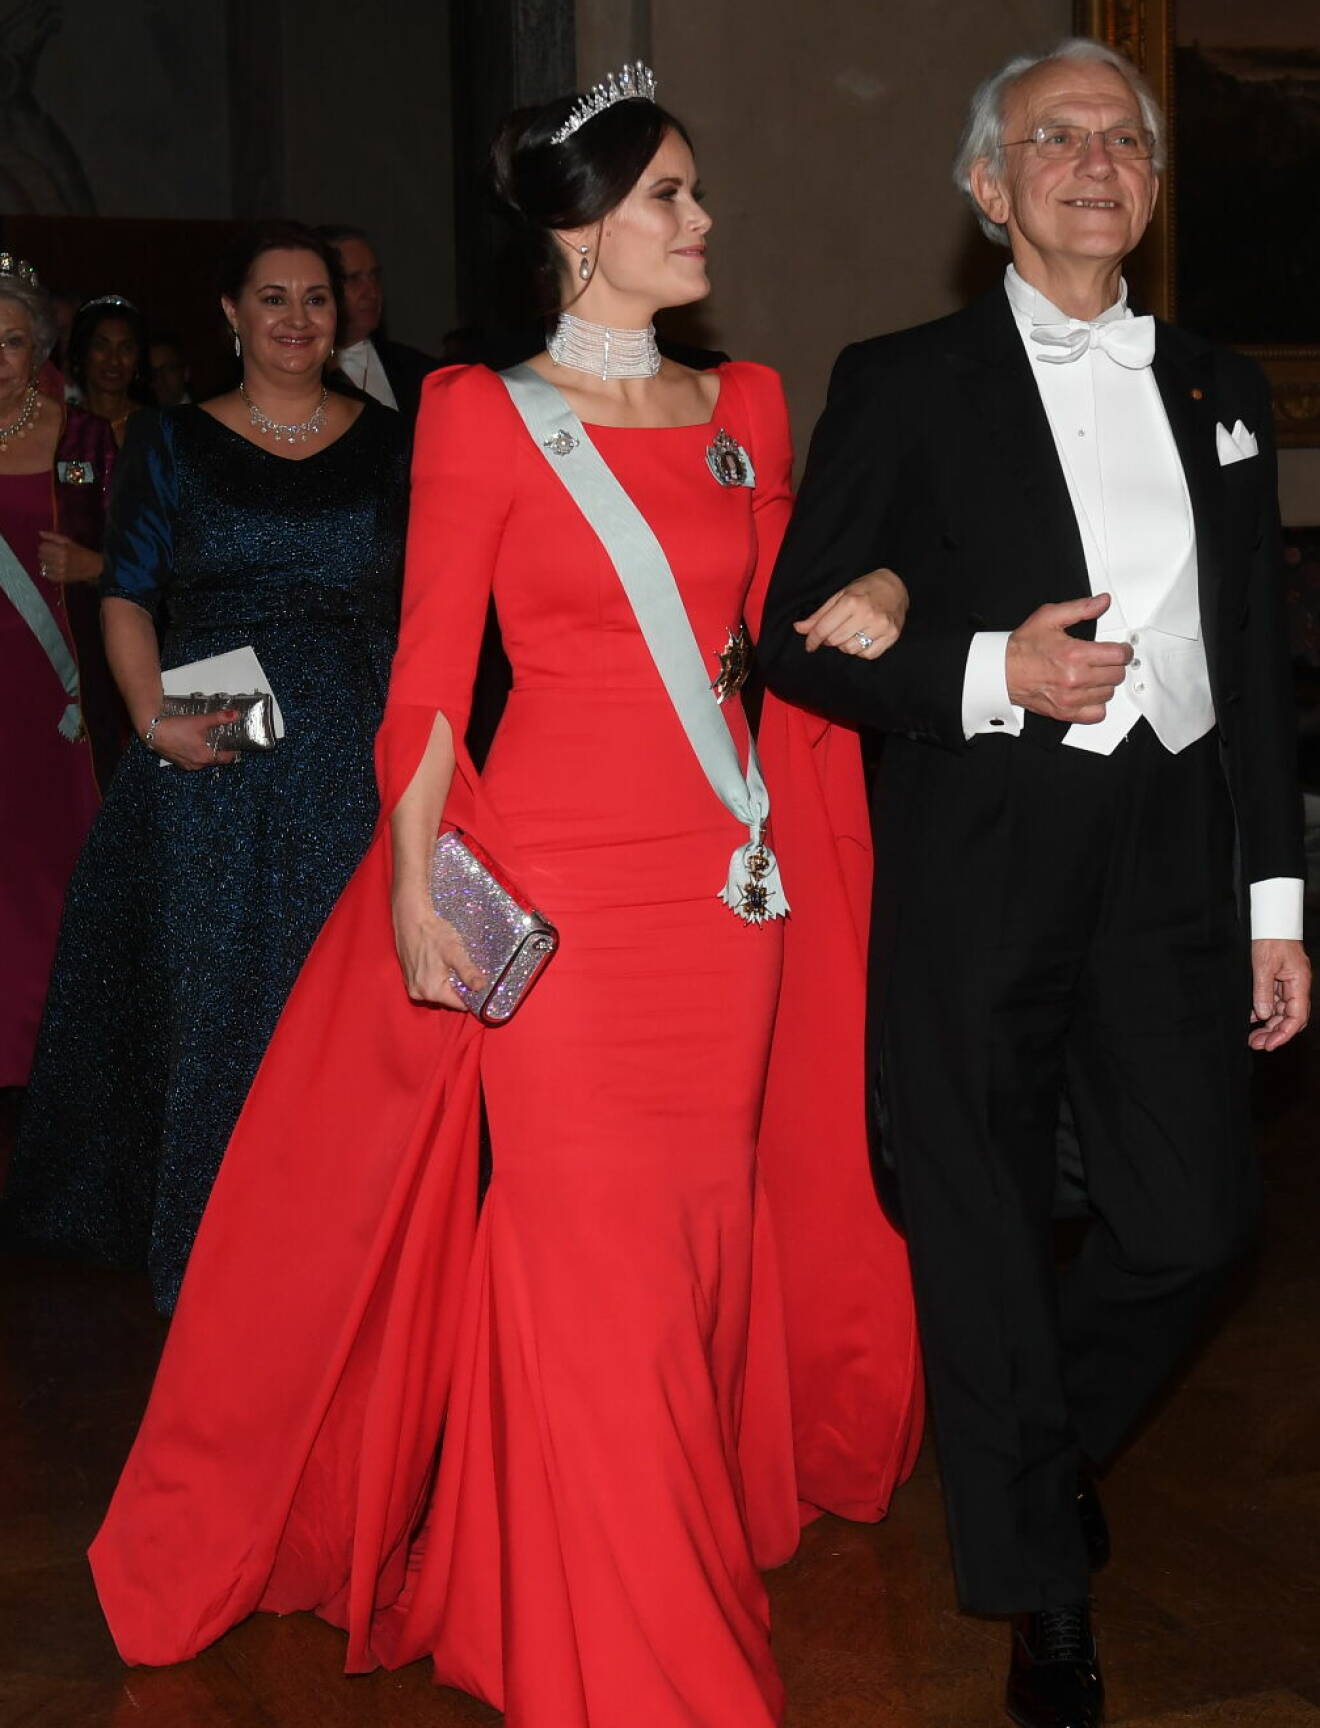 Prinsessan Sofia på Nobelfesten 2018 i sin röda klänning från Zetterberg Couture